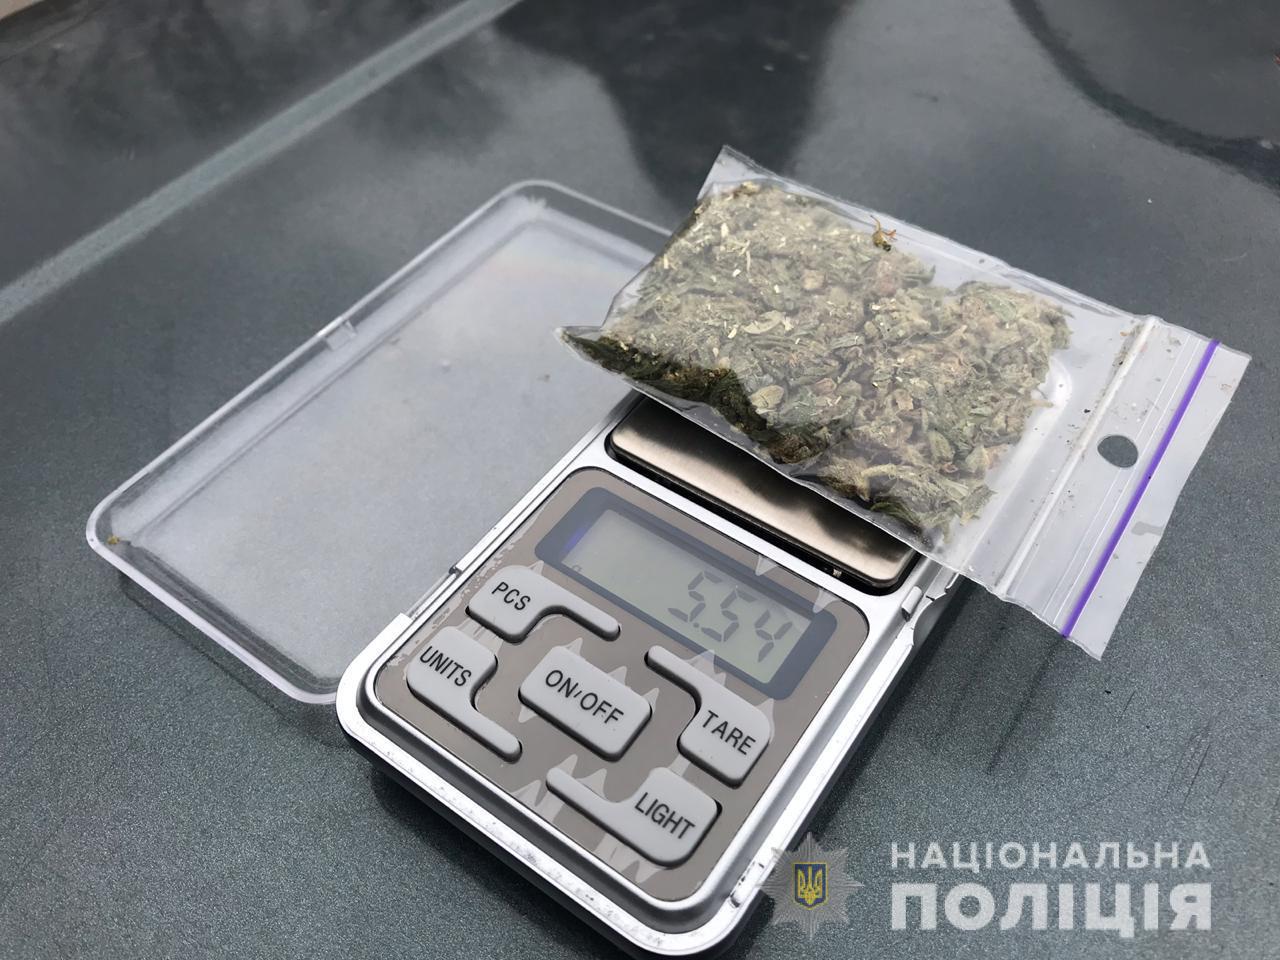 грамм марихуаны в украине